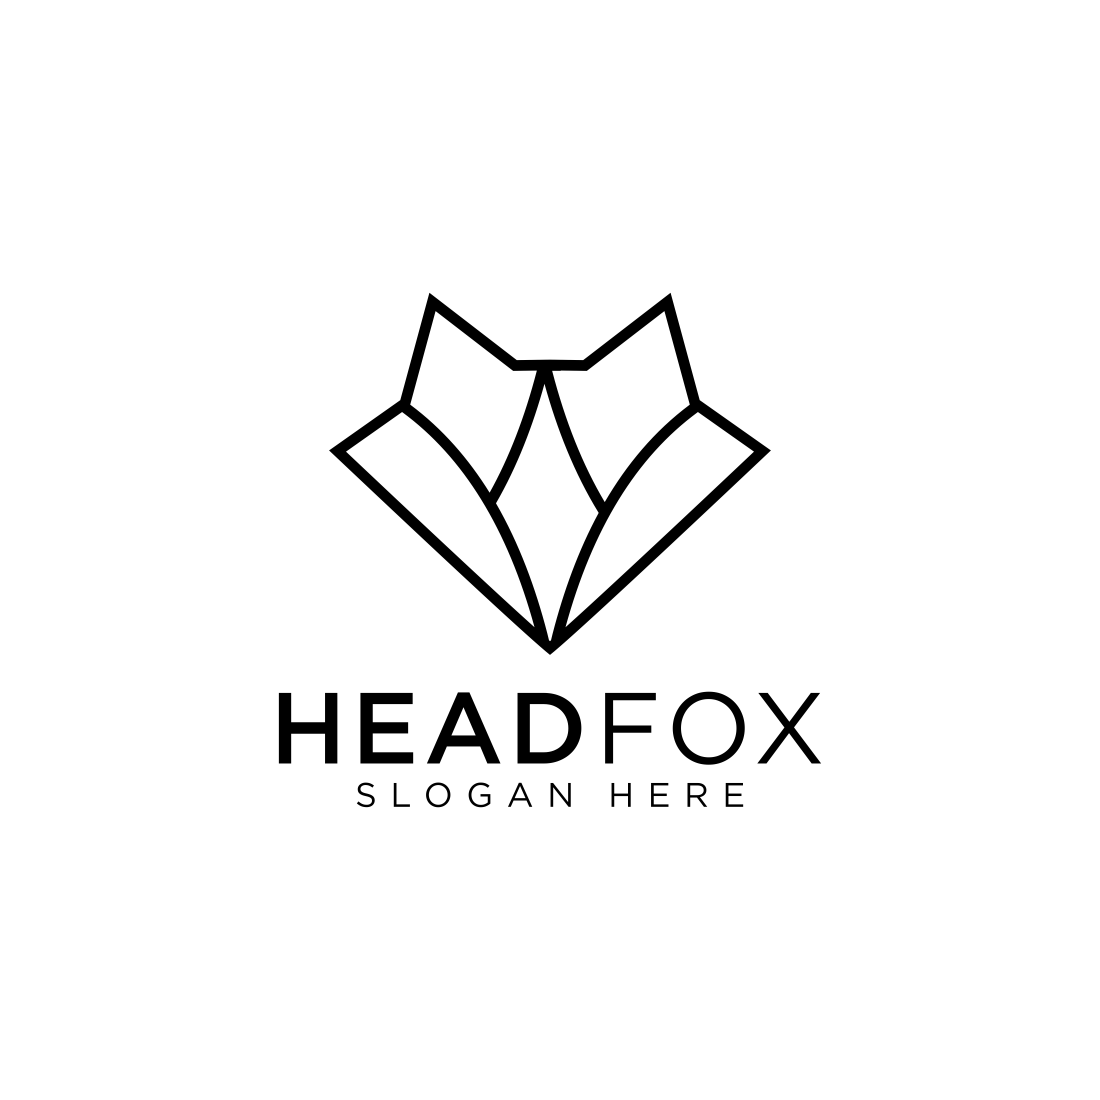 head fox logo design vector cover image.